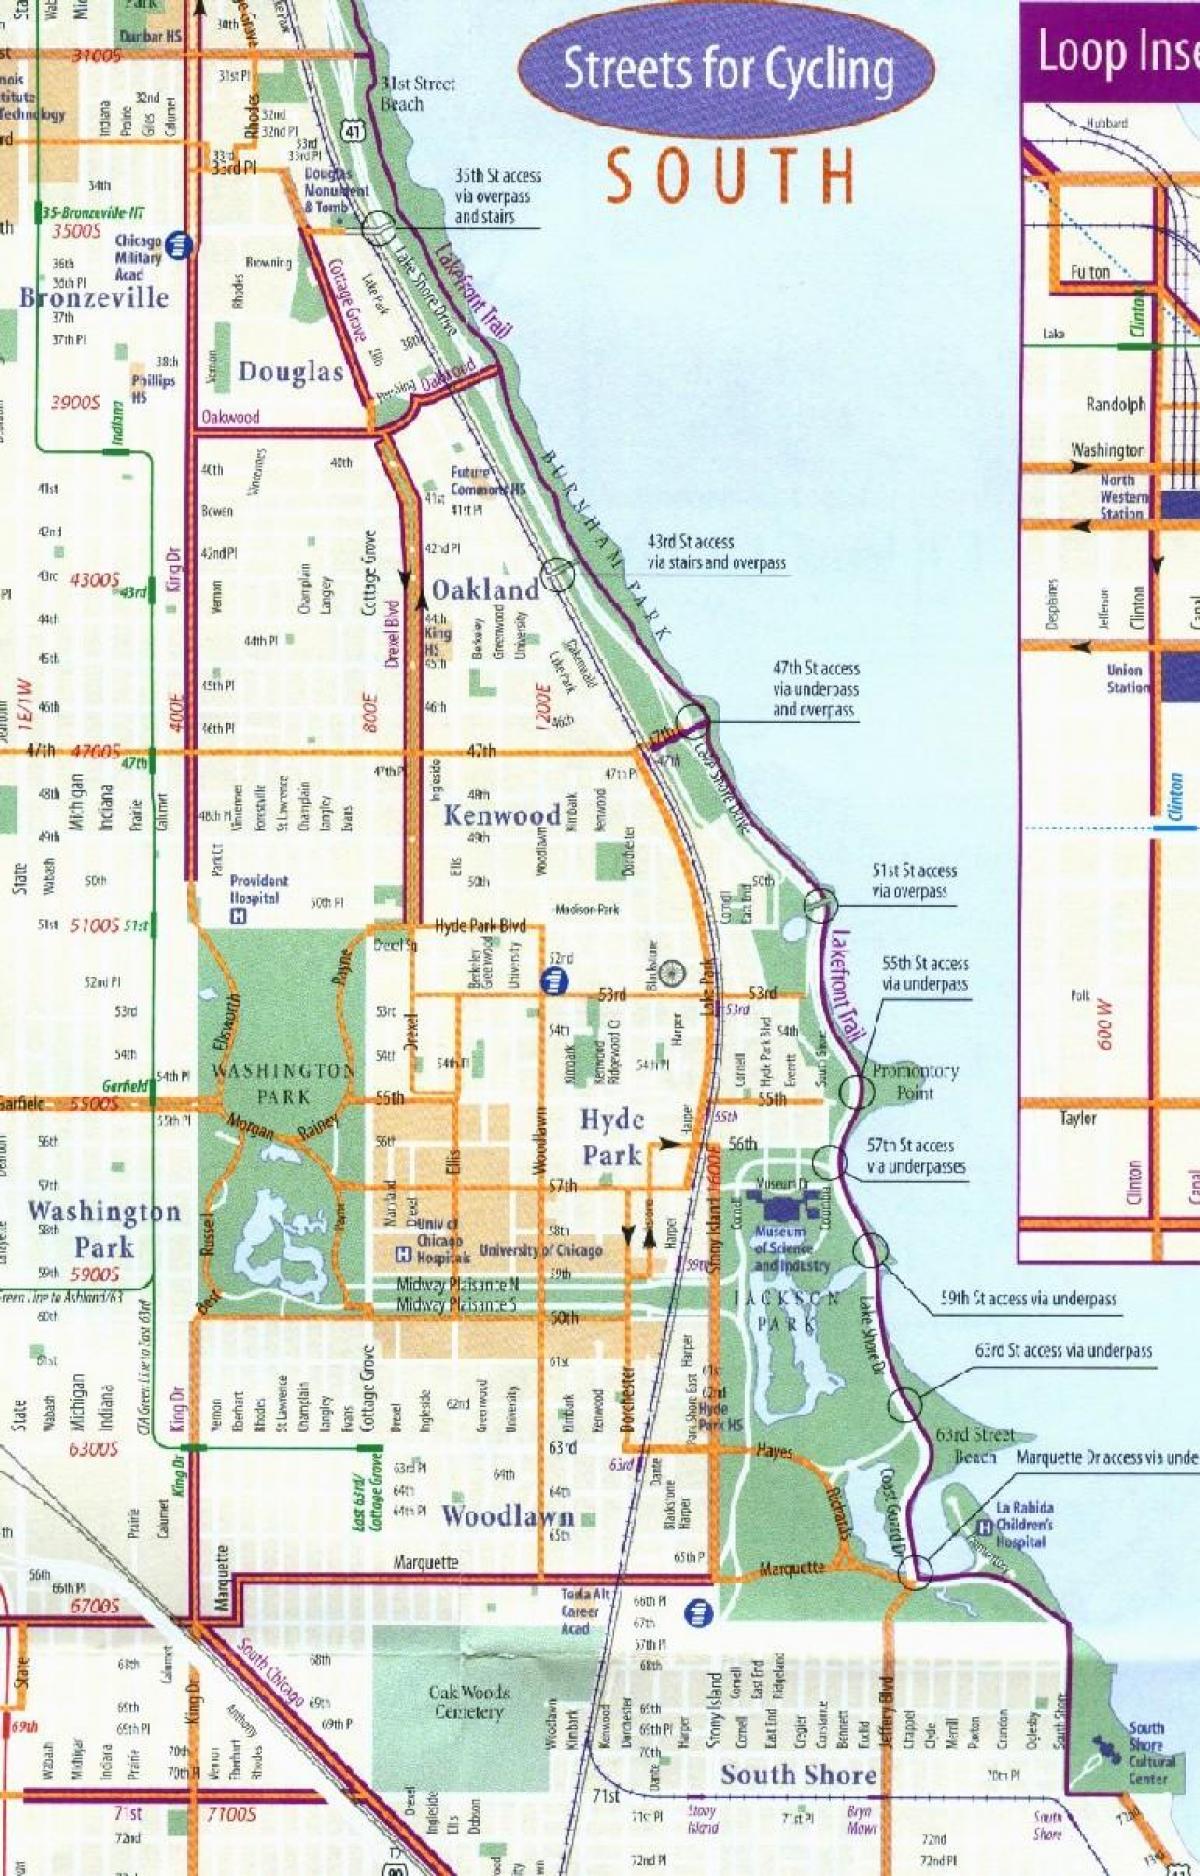 Chicago-bike-lane-map